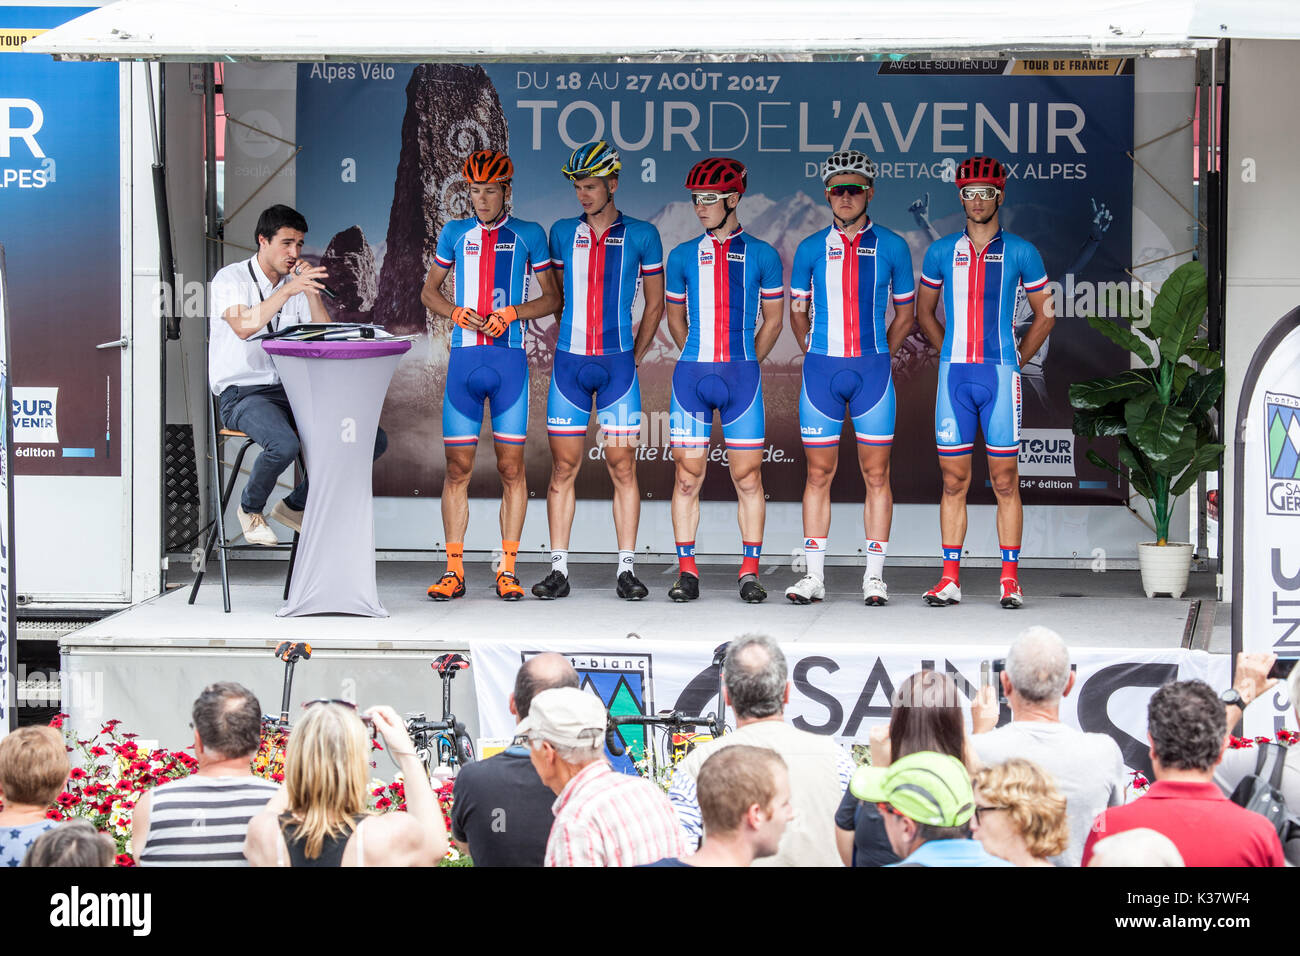 Tour de l'Avenir in Saint-Gervais-Les-Bains August 2017 Stock Photo